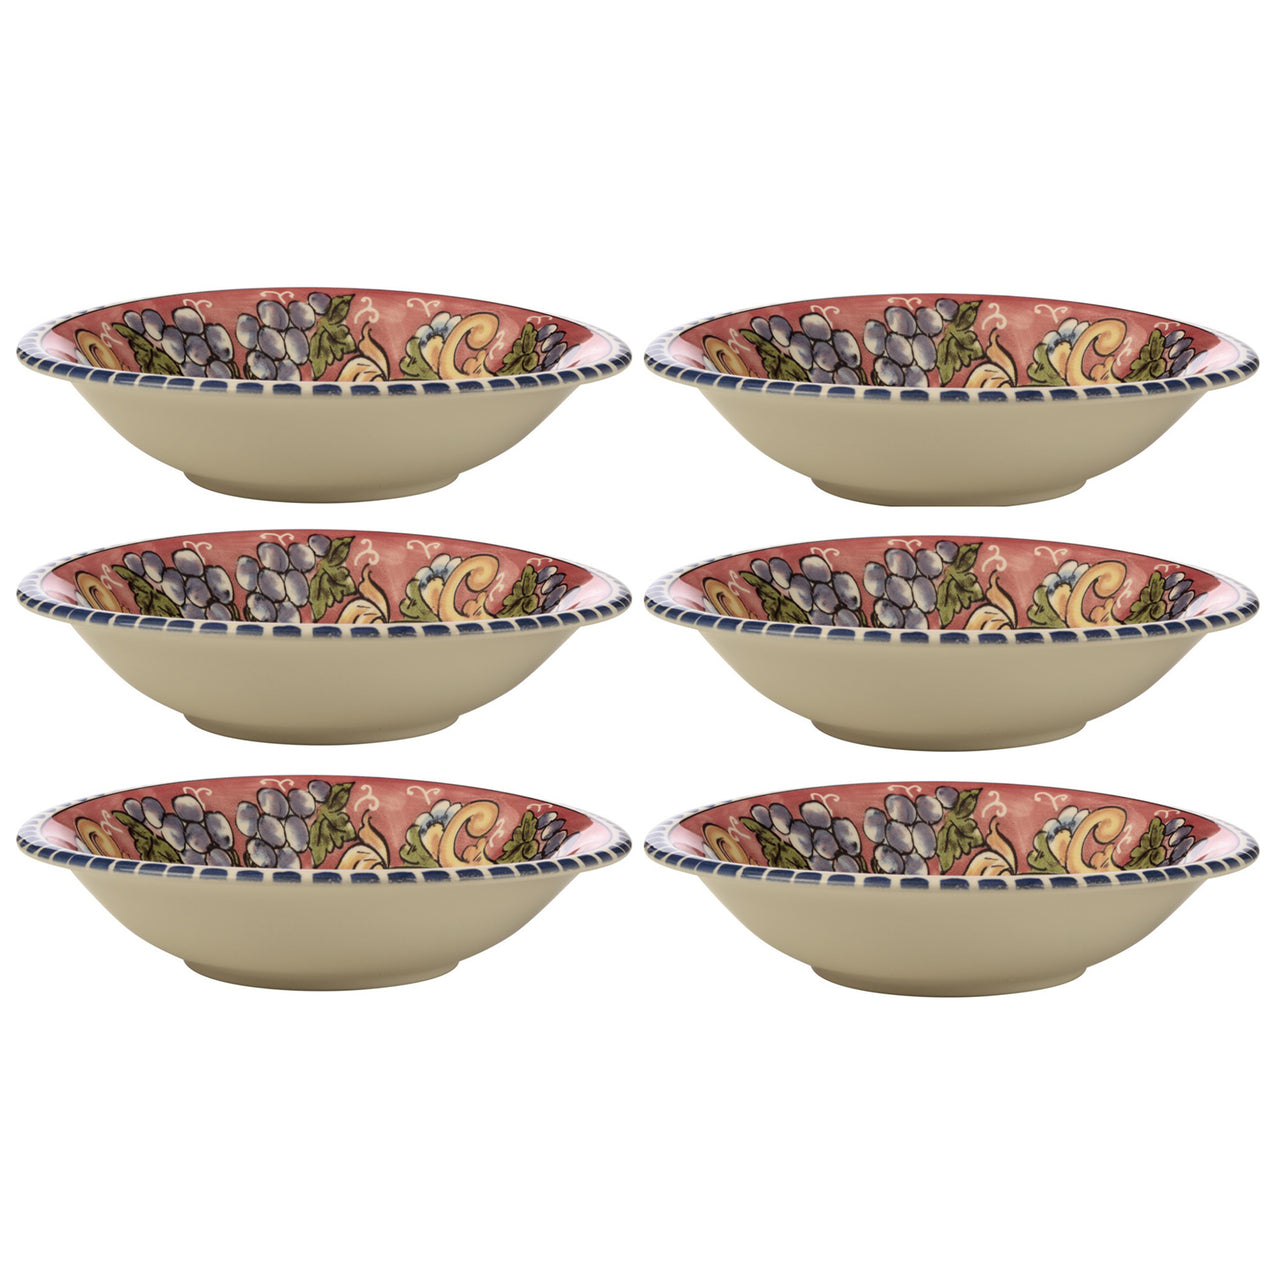 Grapes Ceramica Salerno 21cm Pasta Bowls (Set of 6)